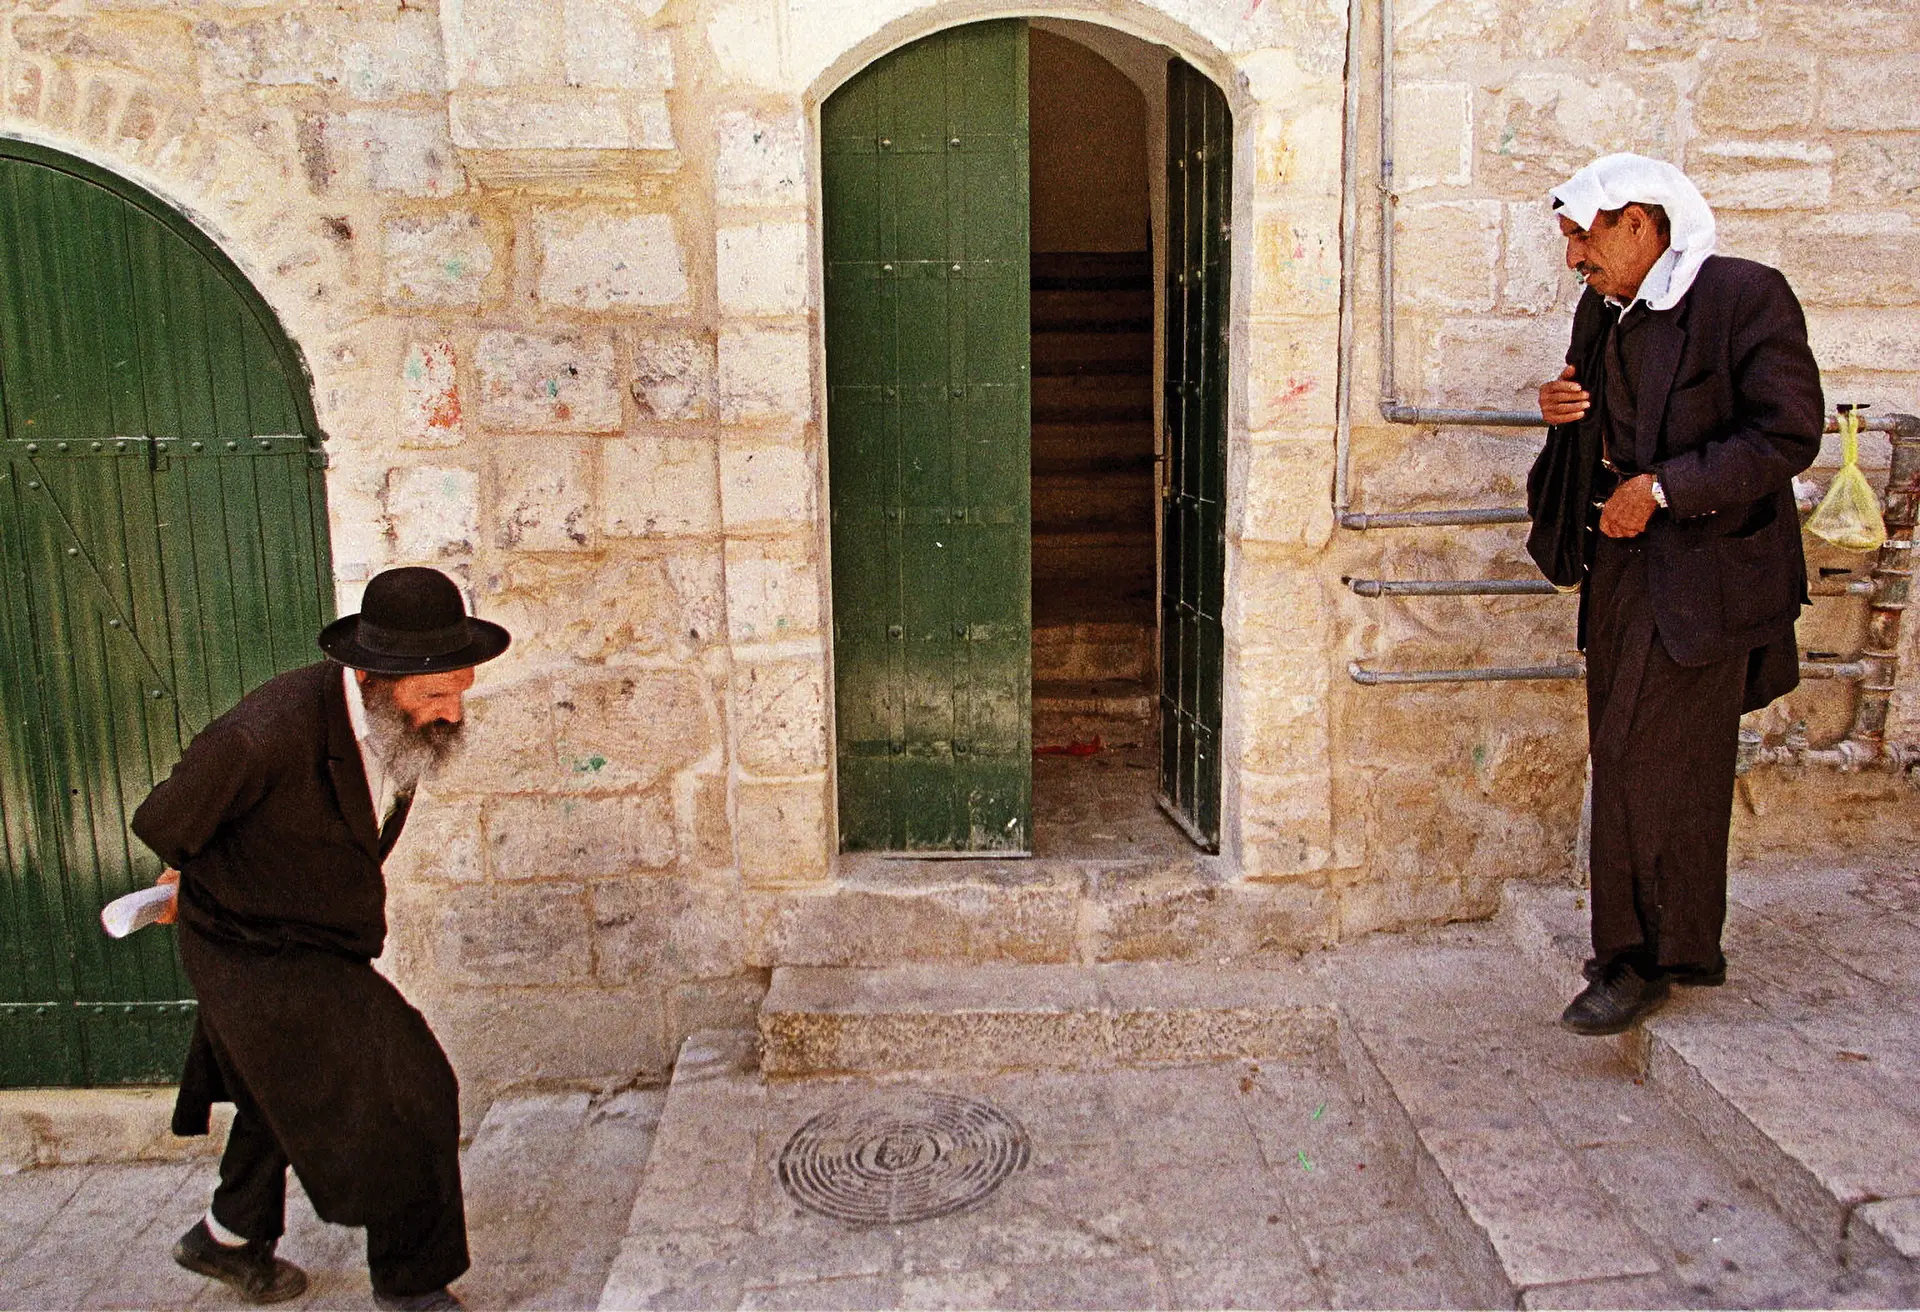 Um judeu ortodoxo e um palestiniano cruzam-se numa rua da cidade velha de Jerusalém, cidade sagrada para ambos